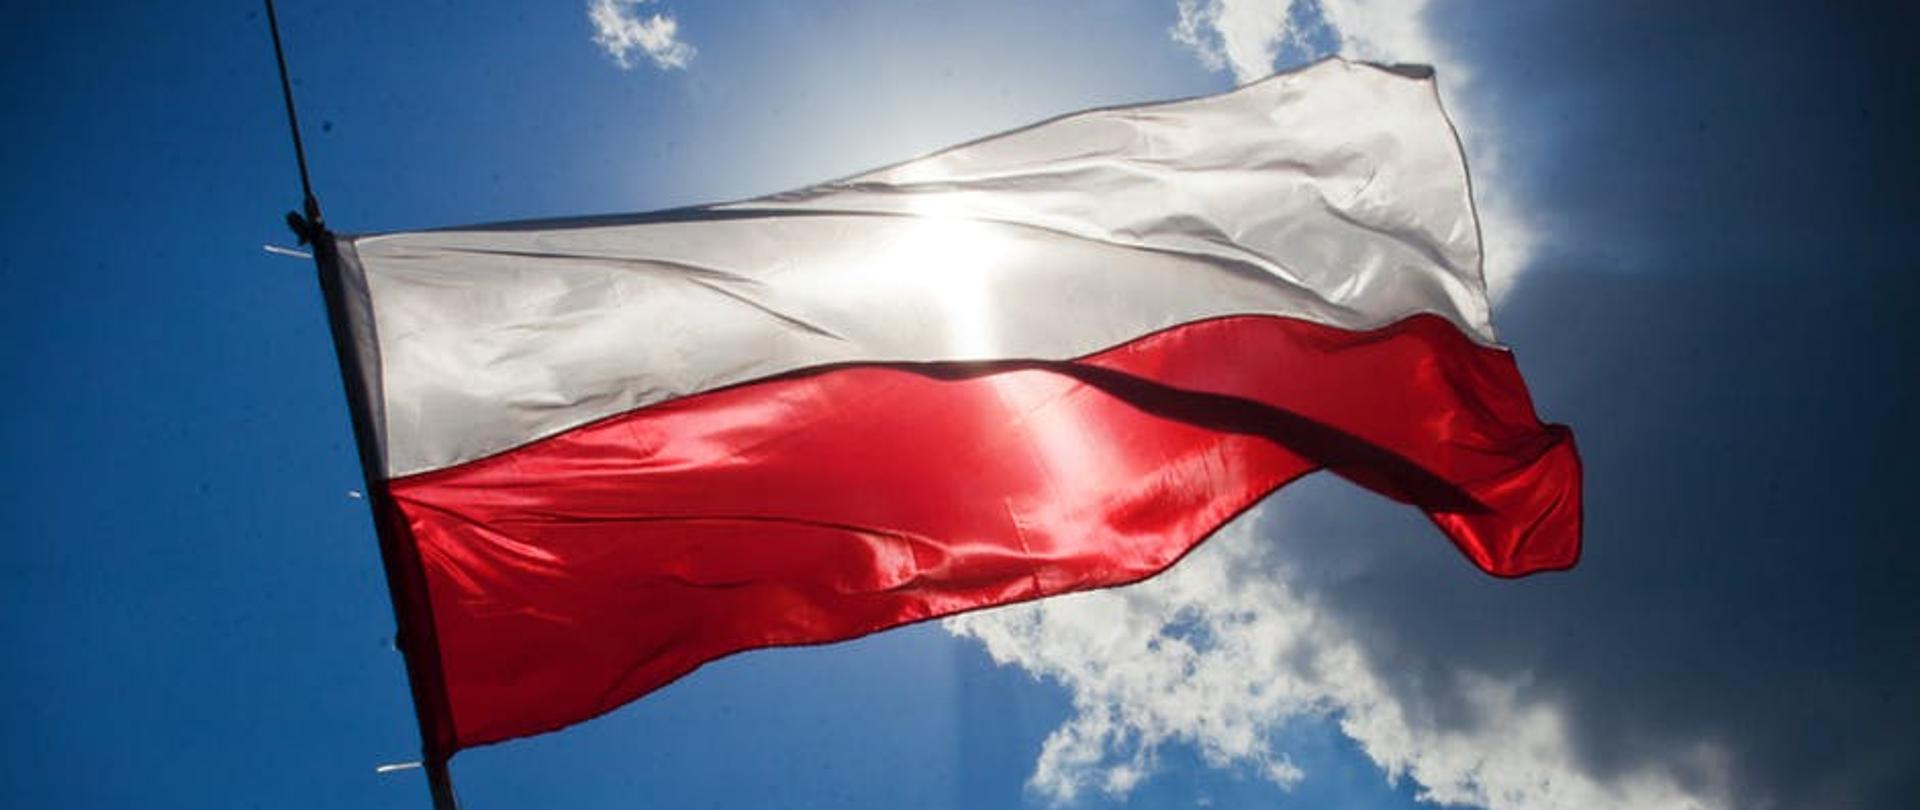 Flaga Polski na tle błękitnego nieba z chmurami przez które przebijają promienie słoneczne.